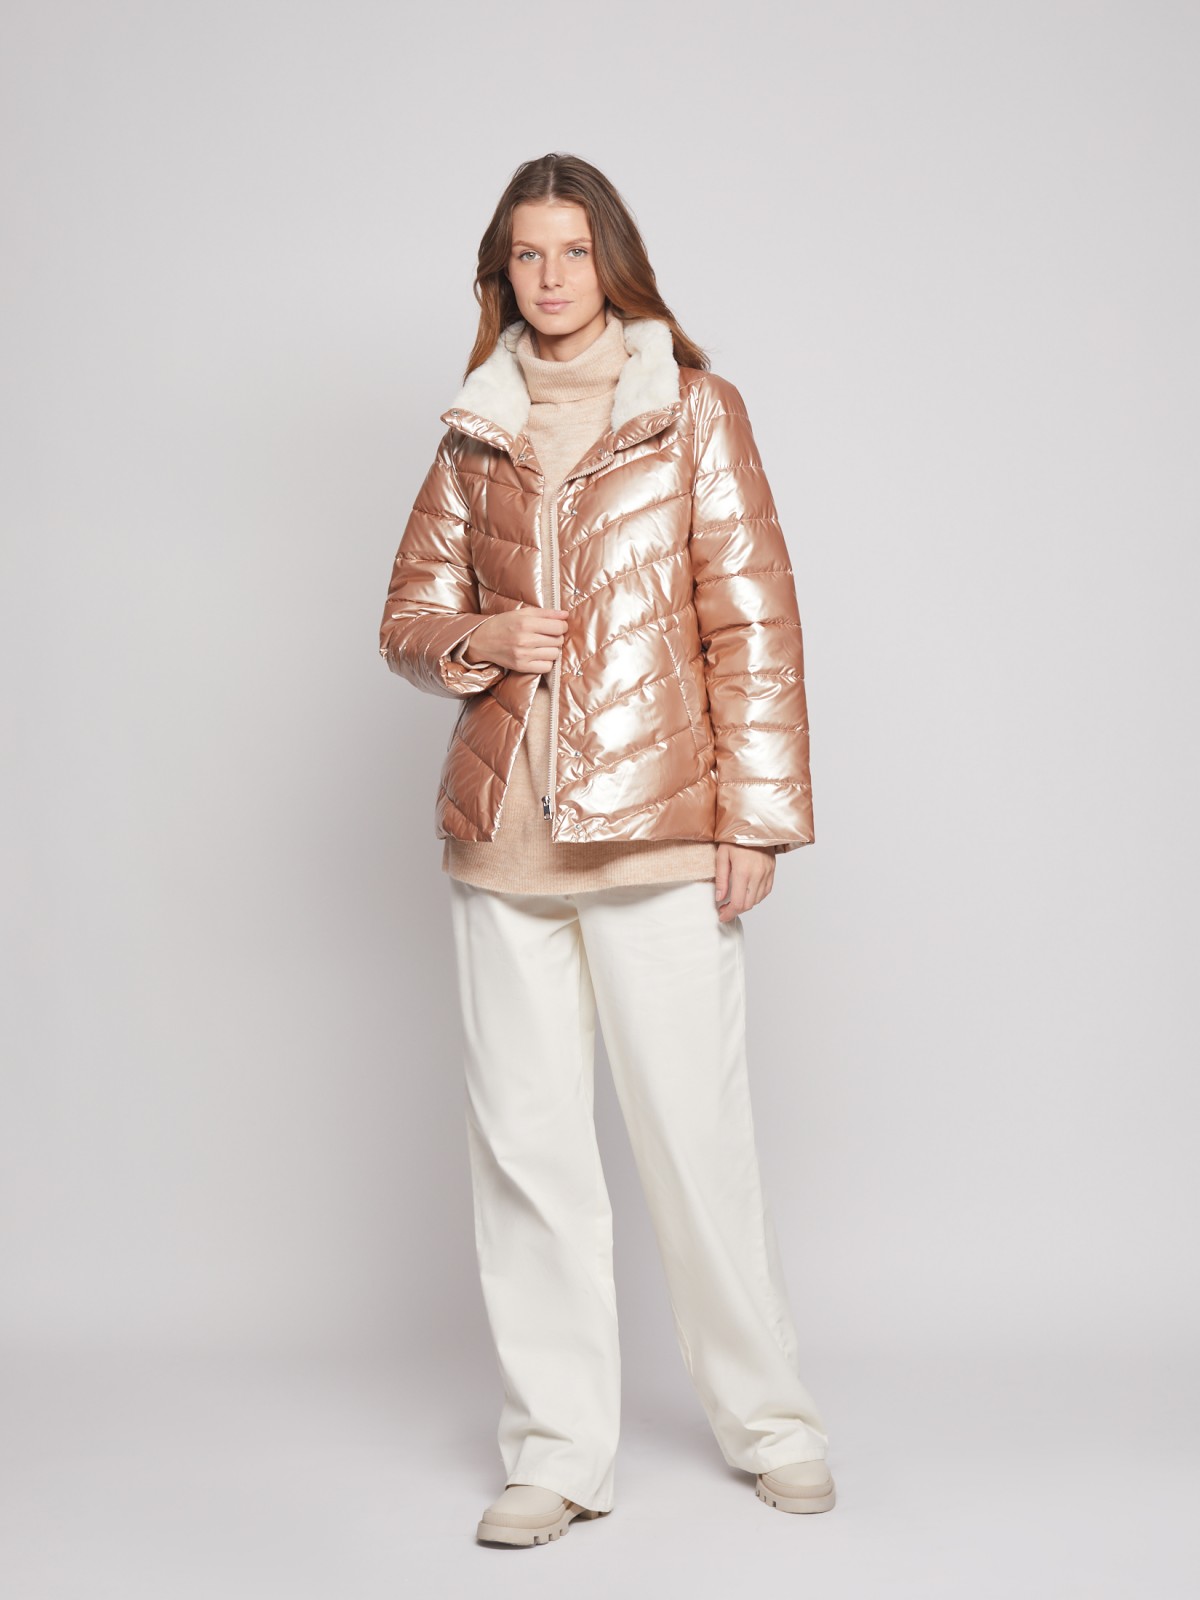 Стёганая куртка с высоким воротником zolla 02233510L084, цвет бежевый, размер XS - фото 2